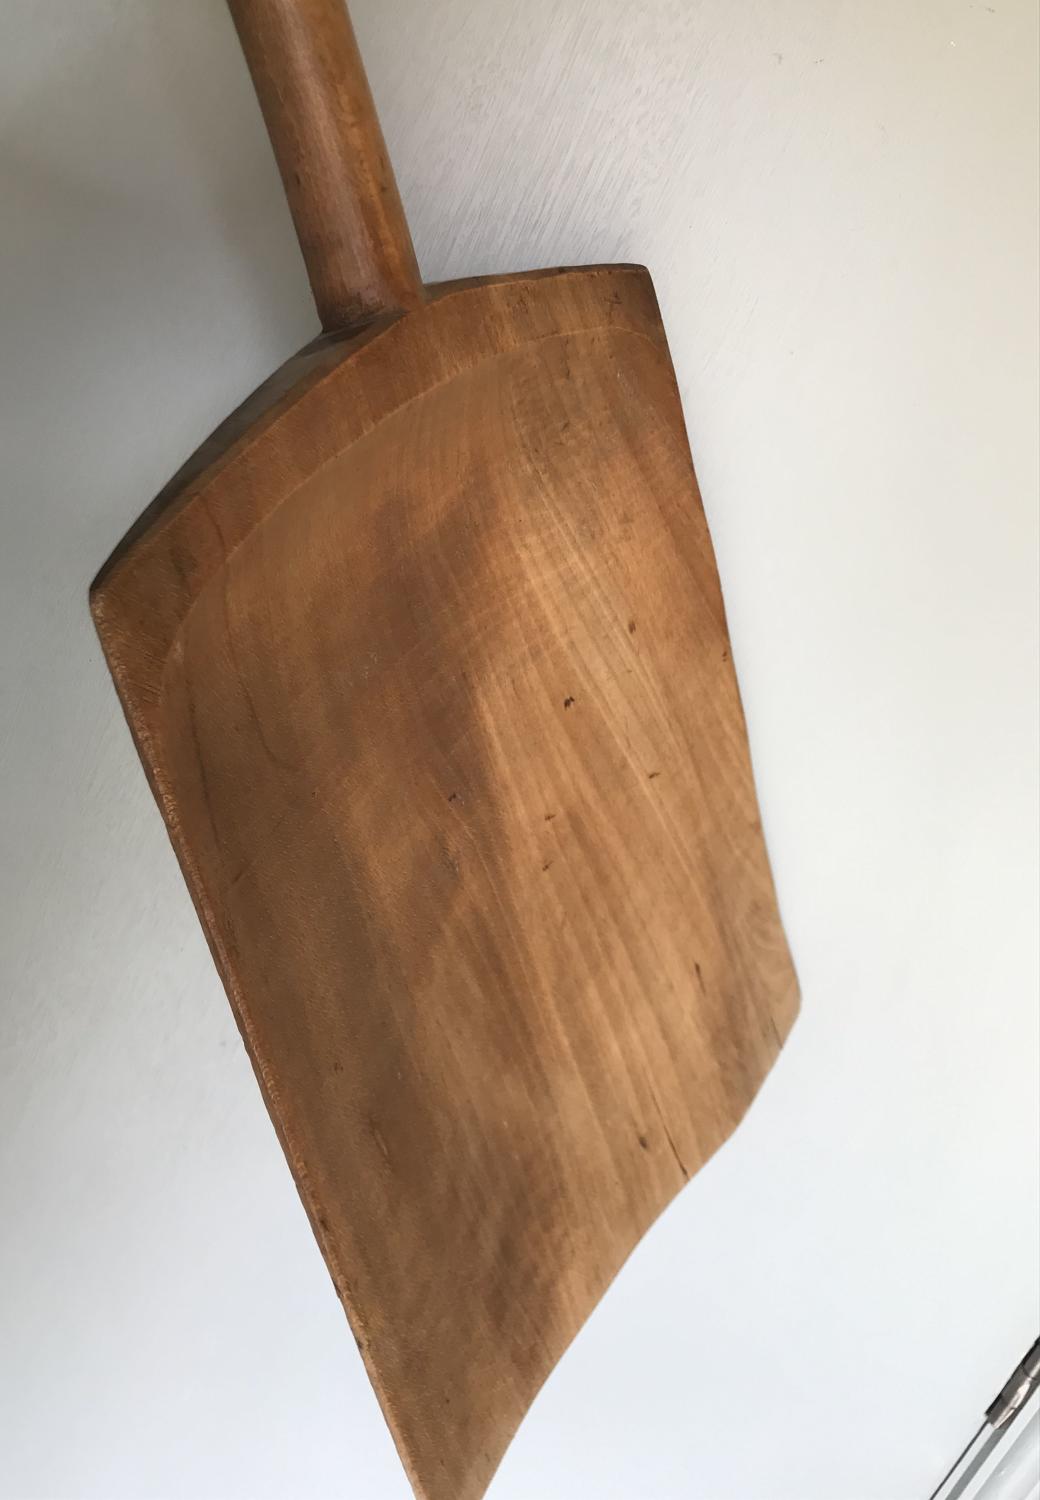 Antique One piece Malt Shovel